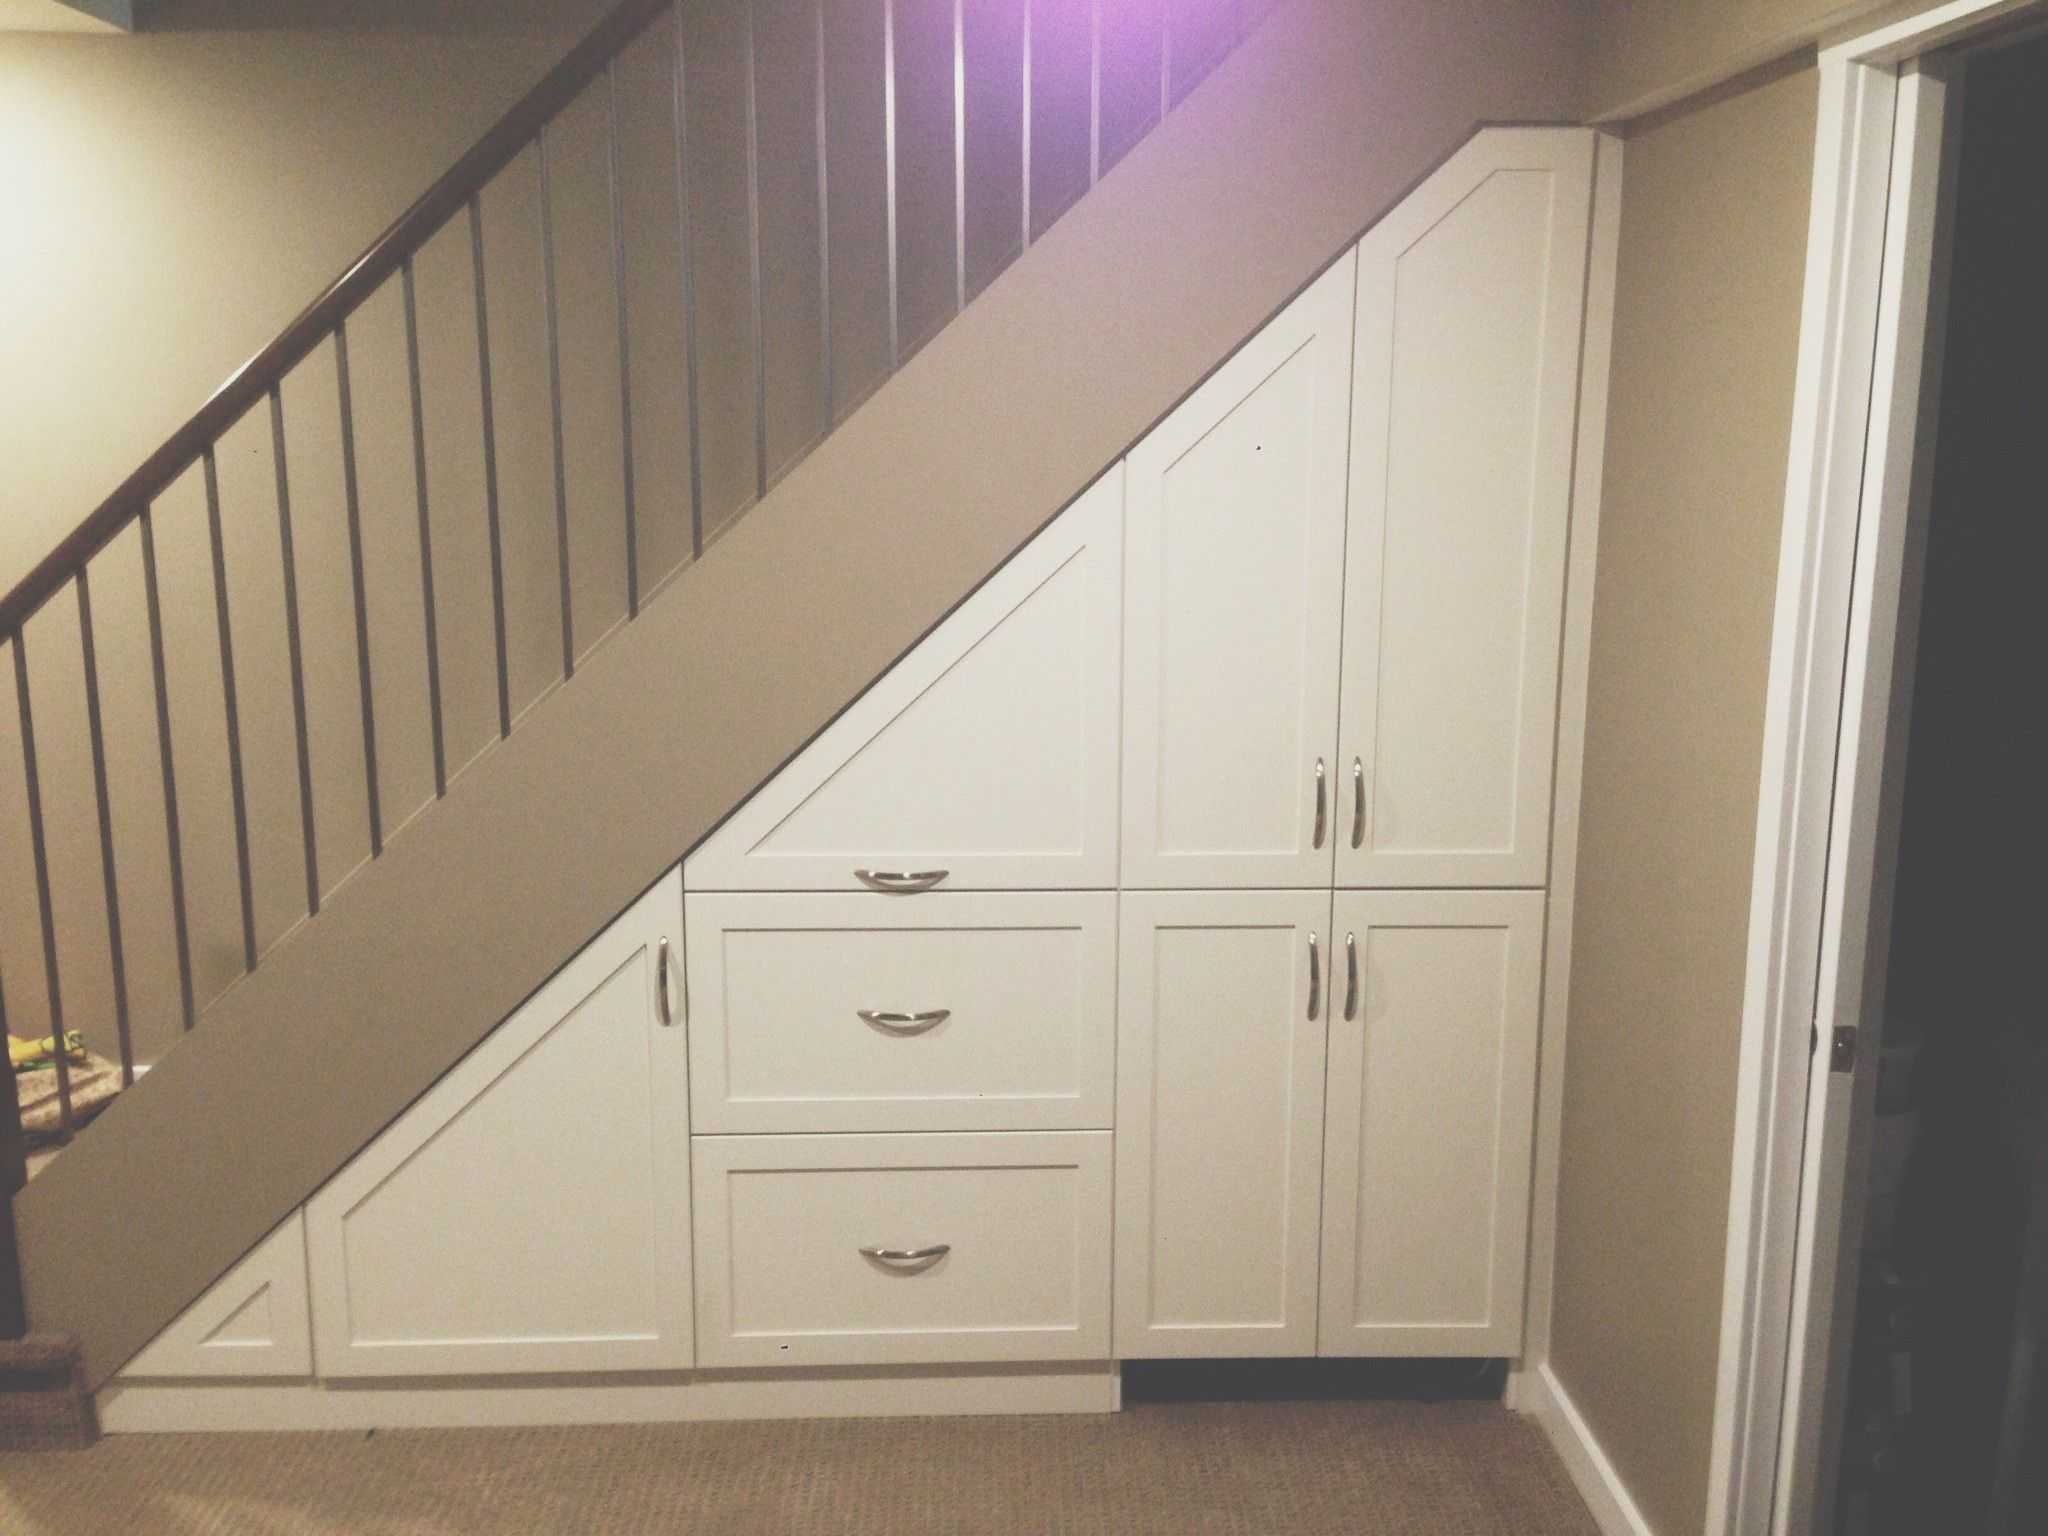 Шкафы под лестницей в доме: 15 красивых и недорогих идей